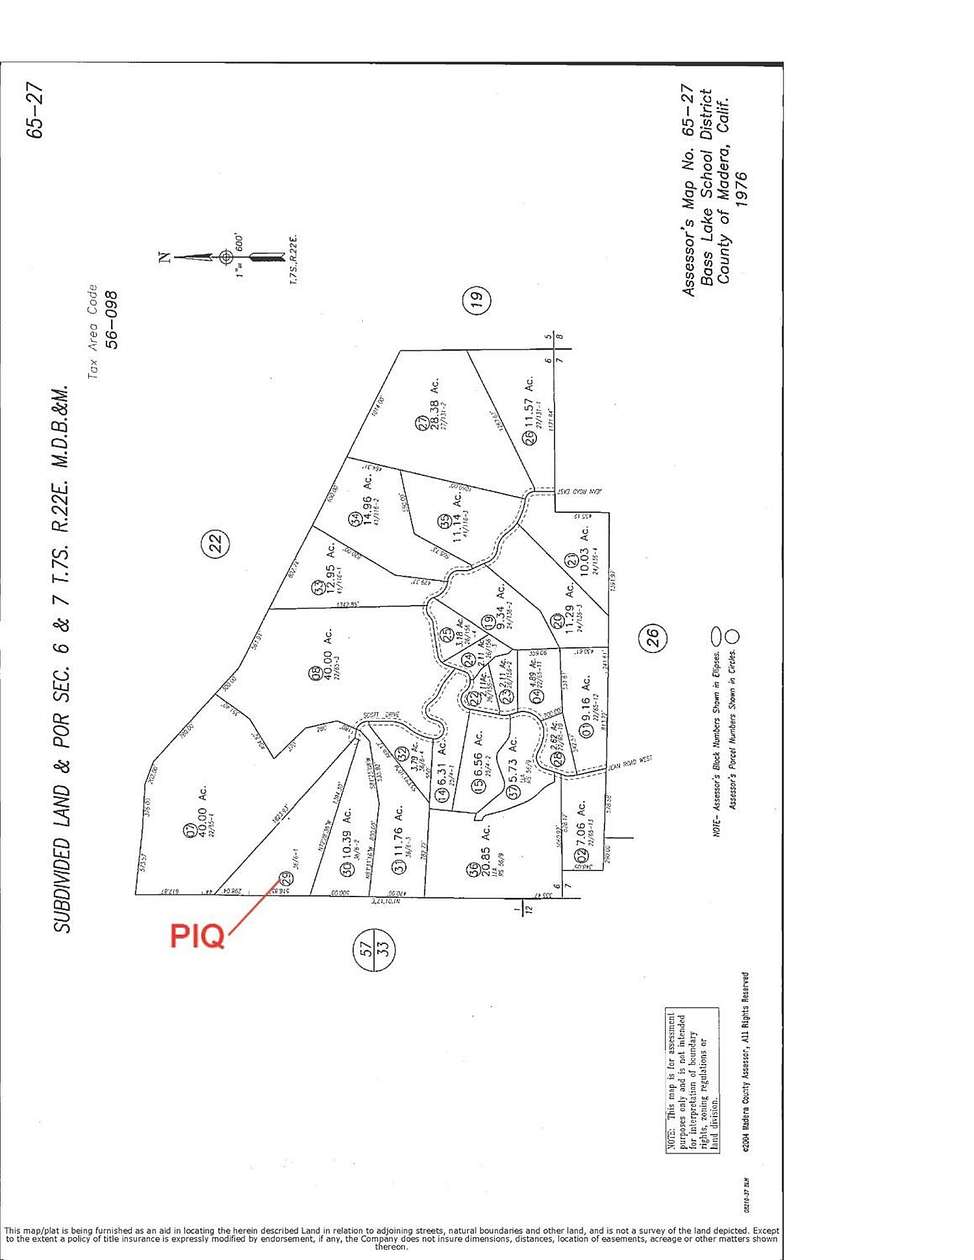 13.46 Acres of Land for Sale in Oakhurst, California